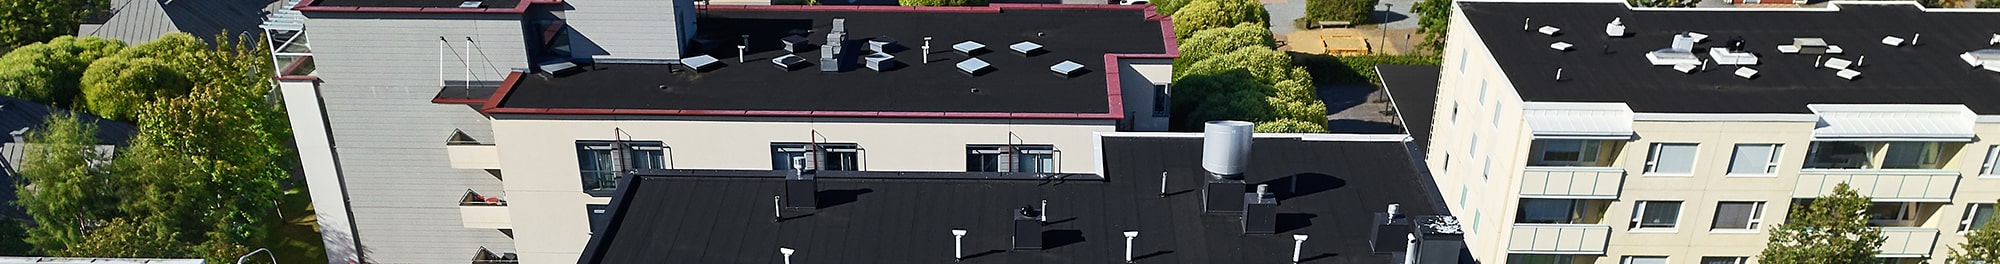 Commercial roofing contractors in Southeast Wisconsin (Milwaukee, Kenosha, Racine, Waukesha)